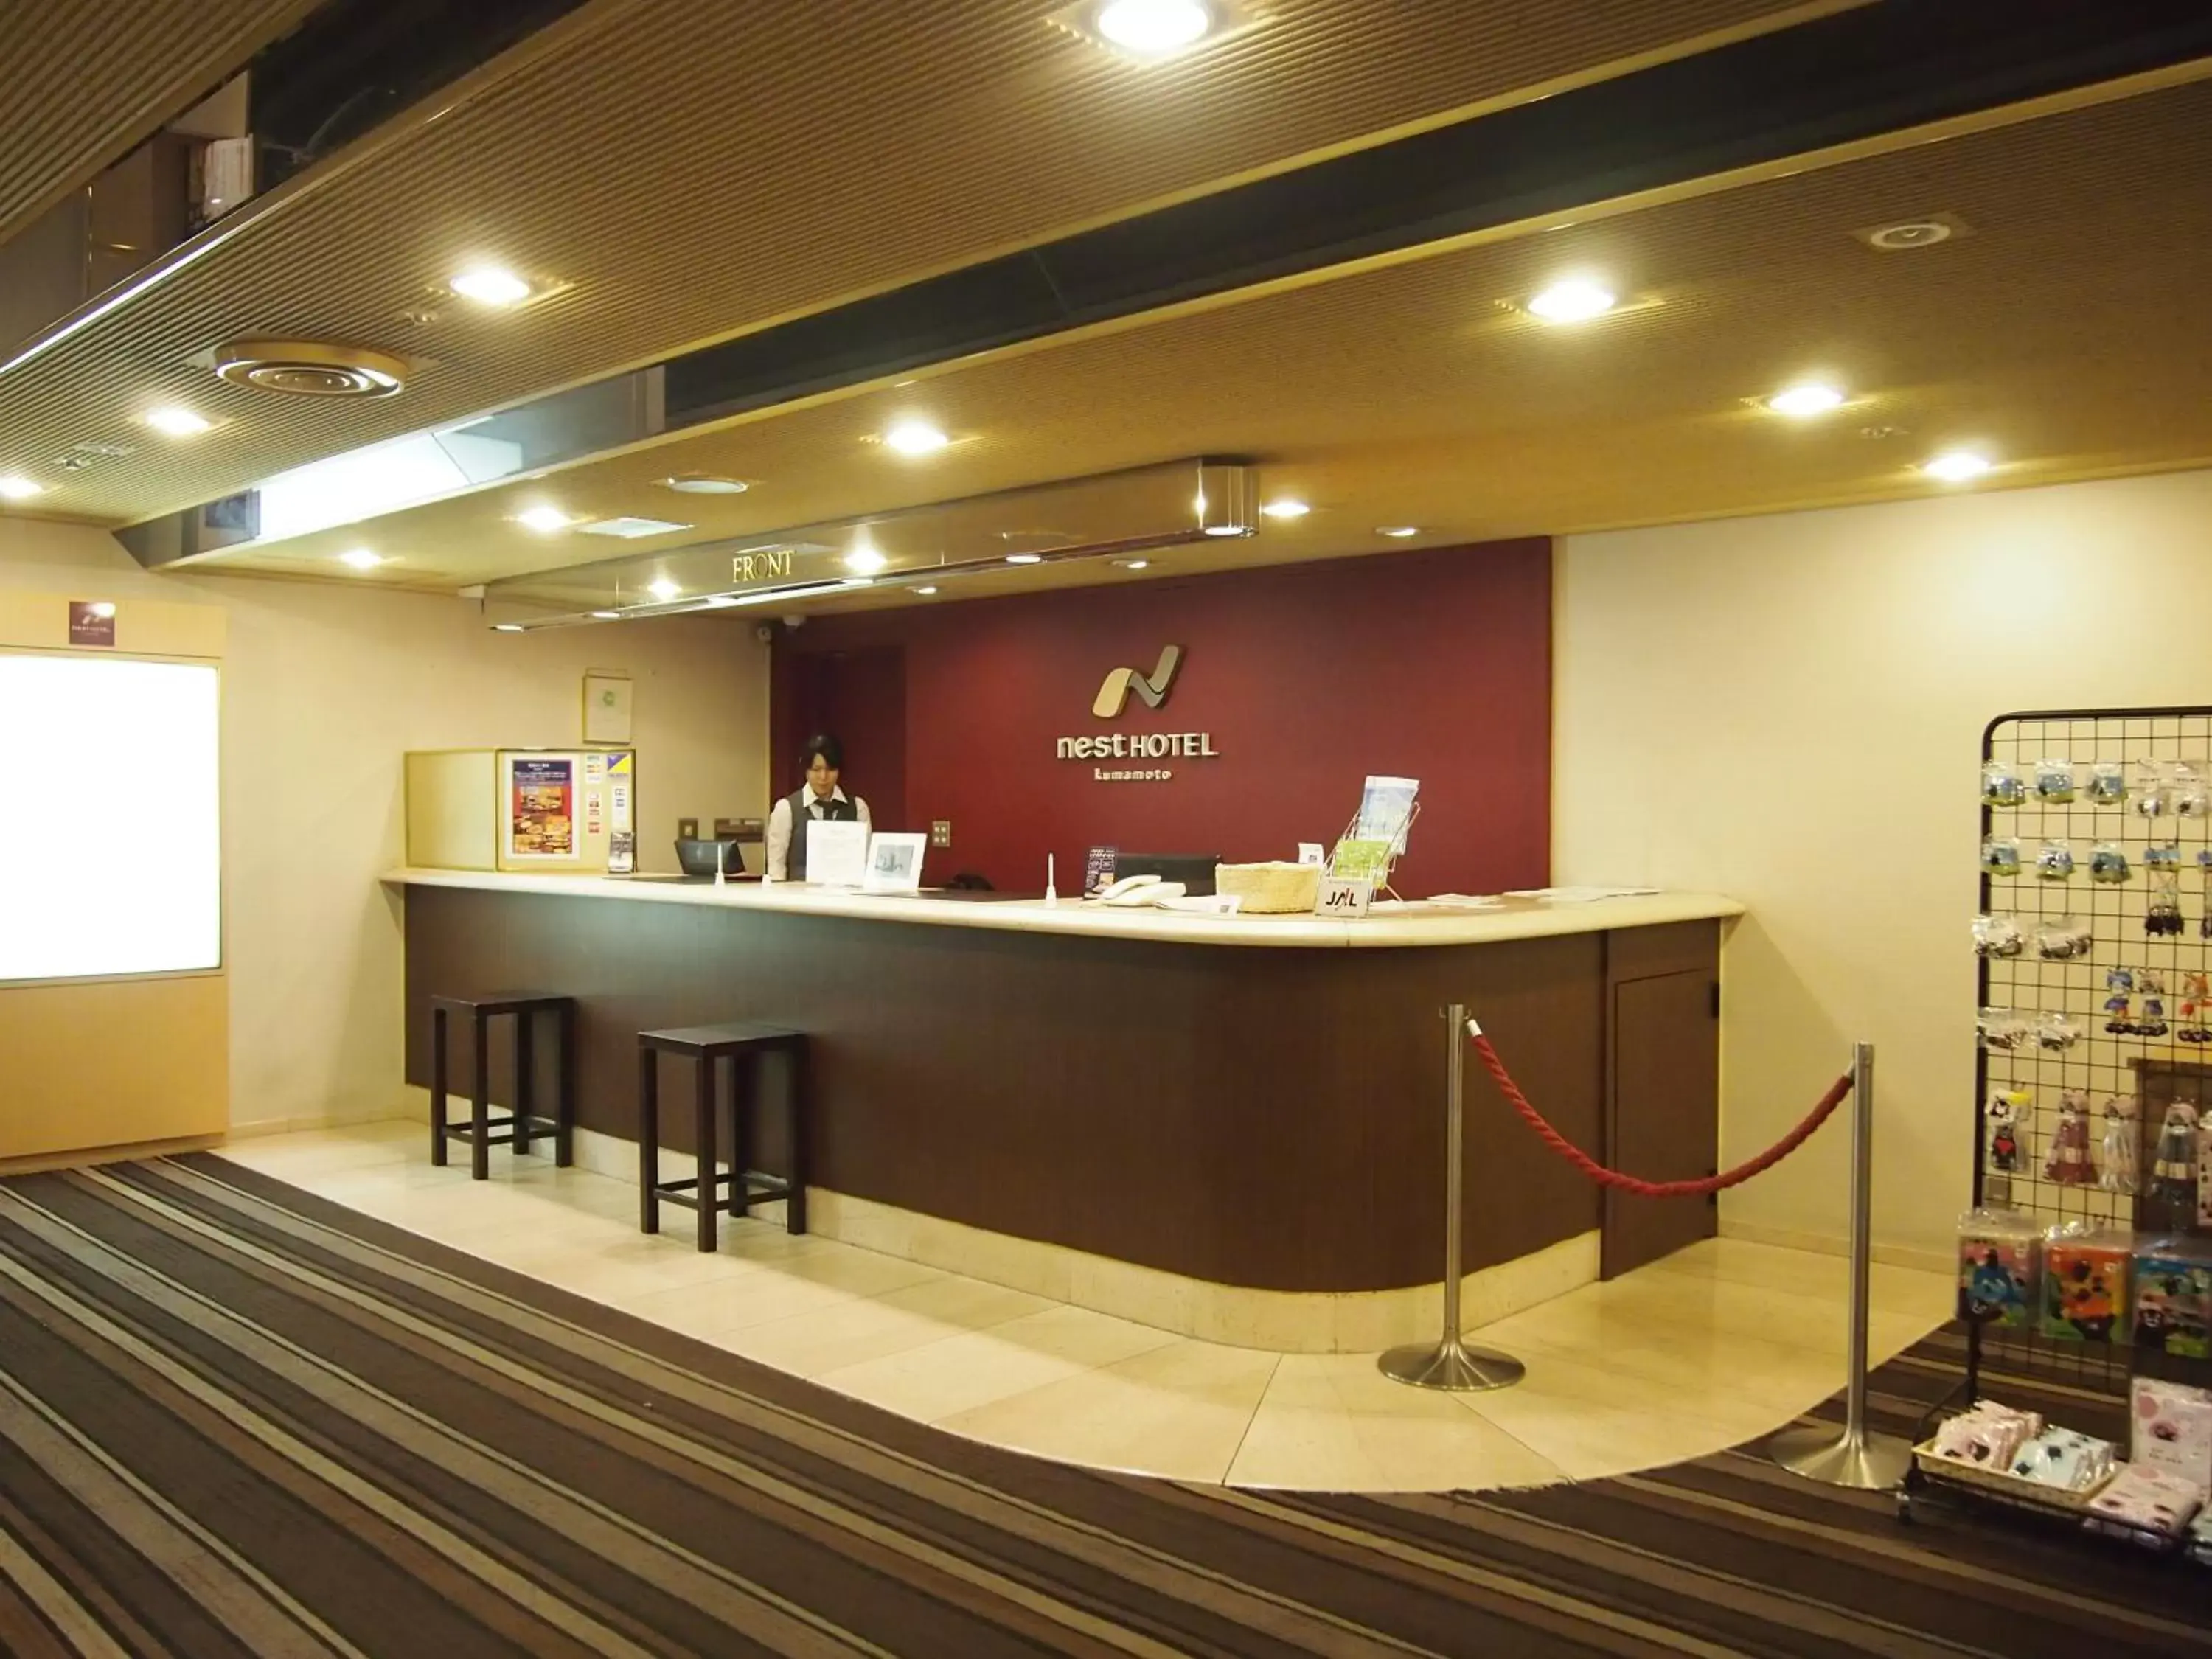 Lobby or reception, Lobby/Reception in Nest Hotel Kumamoto